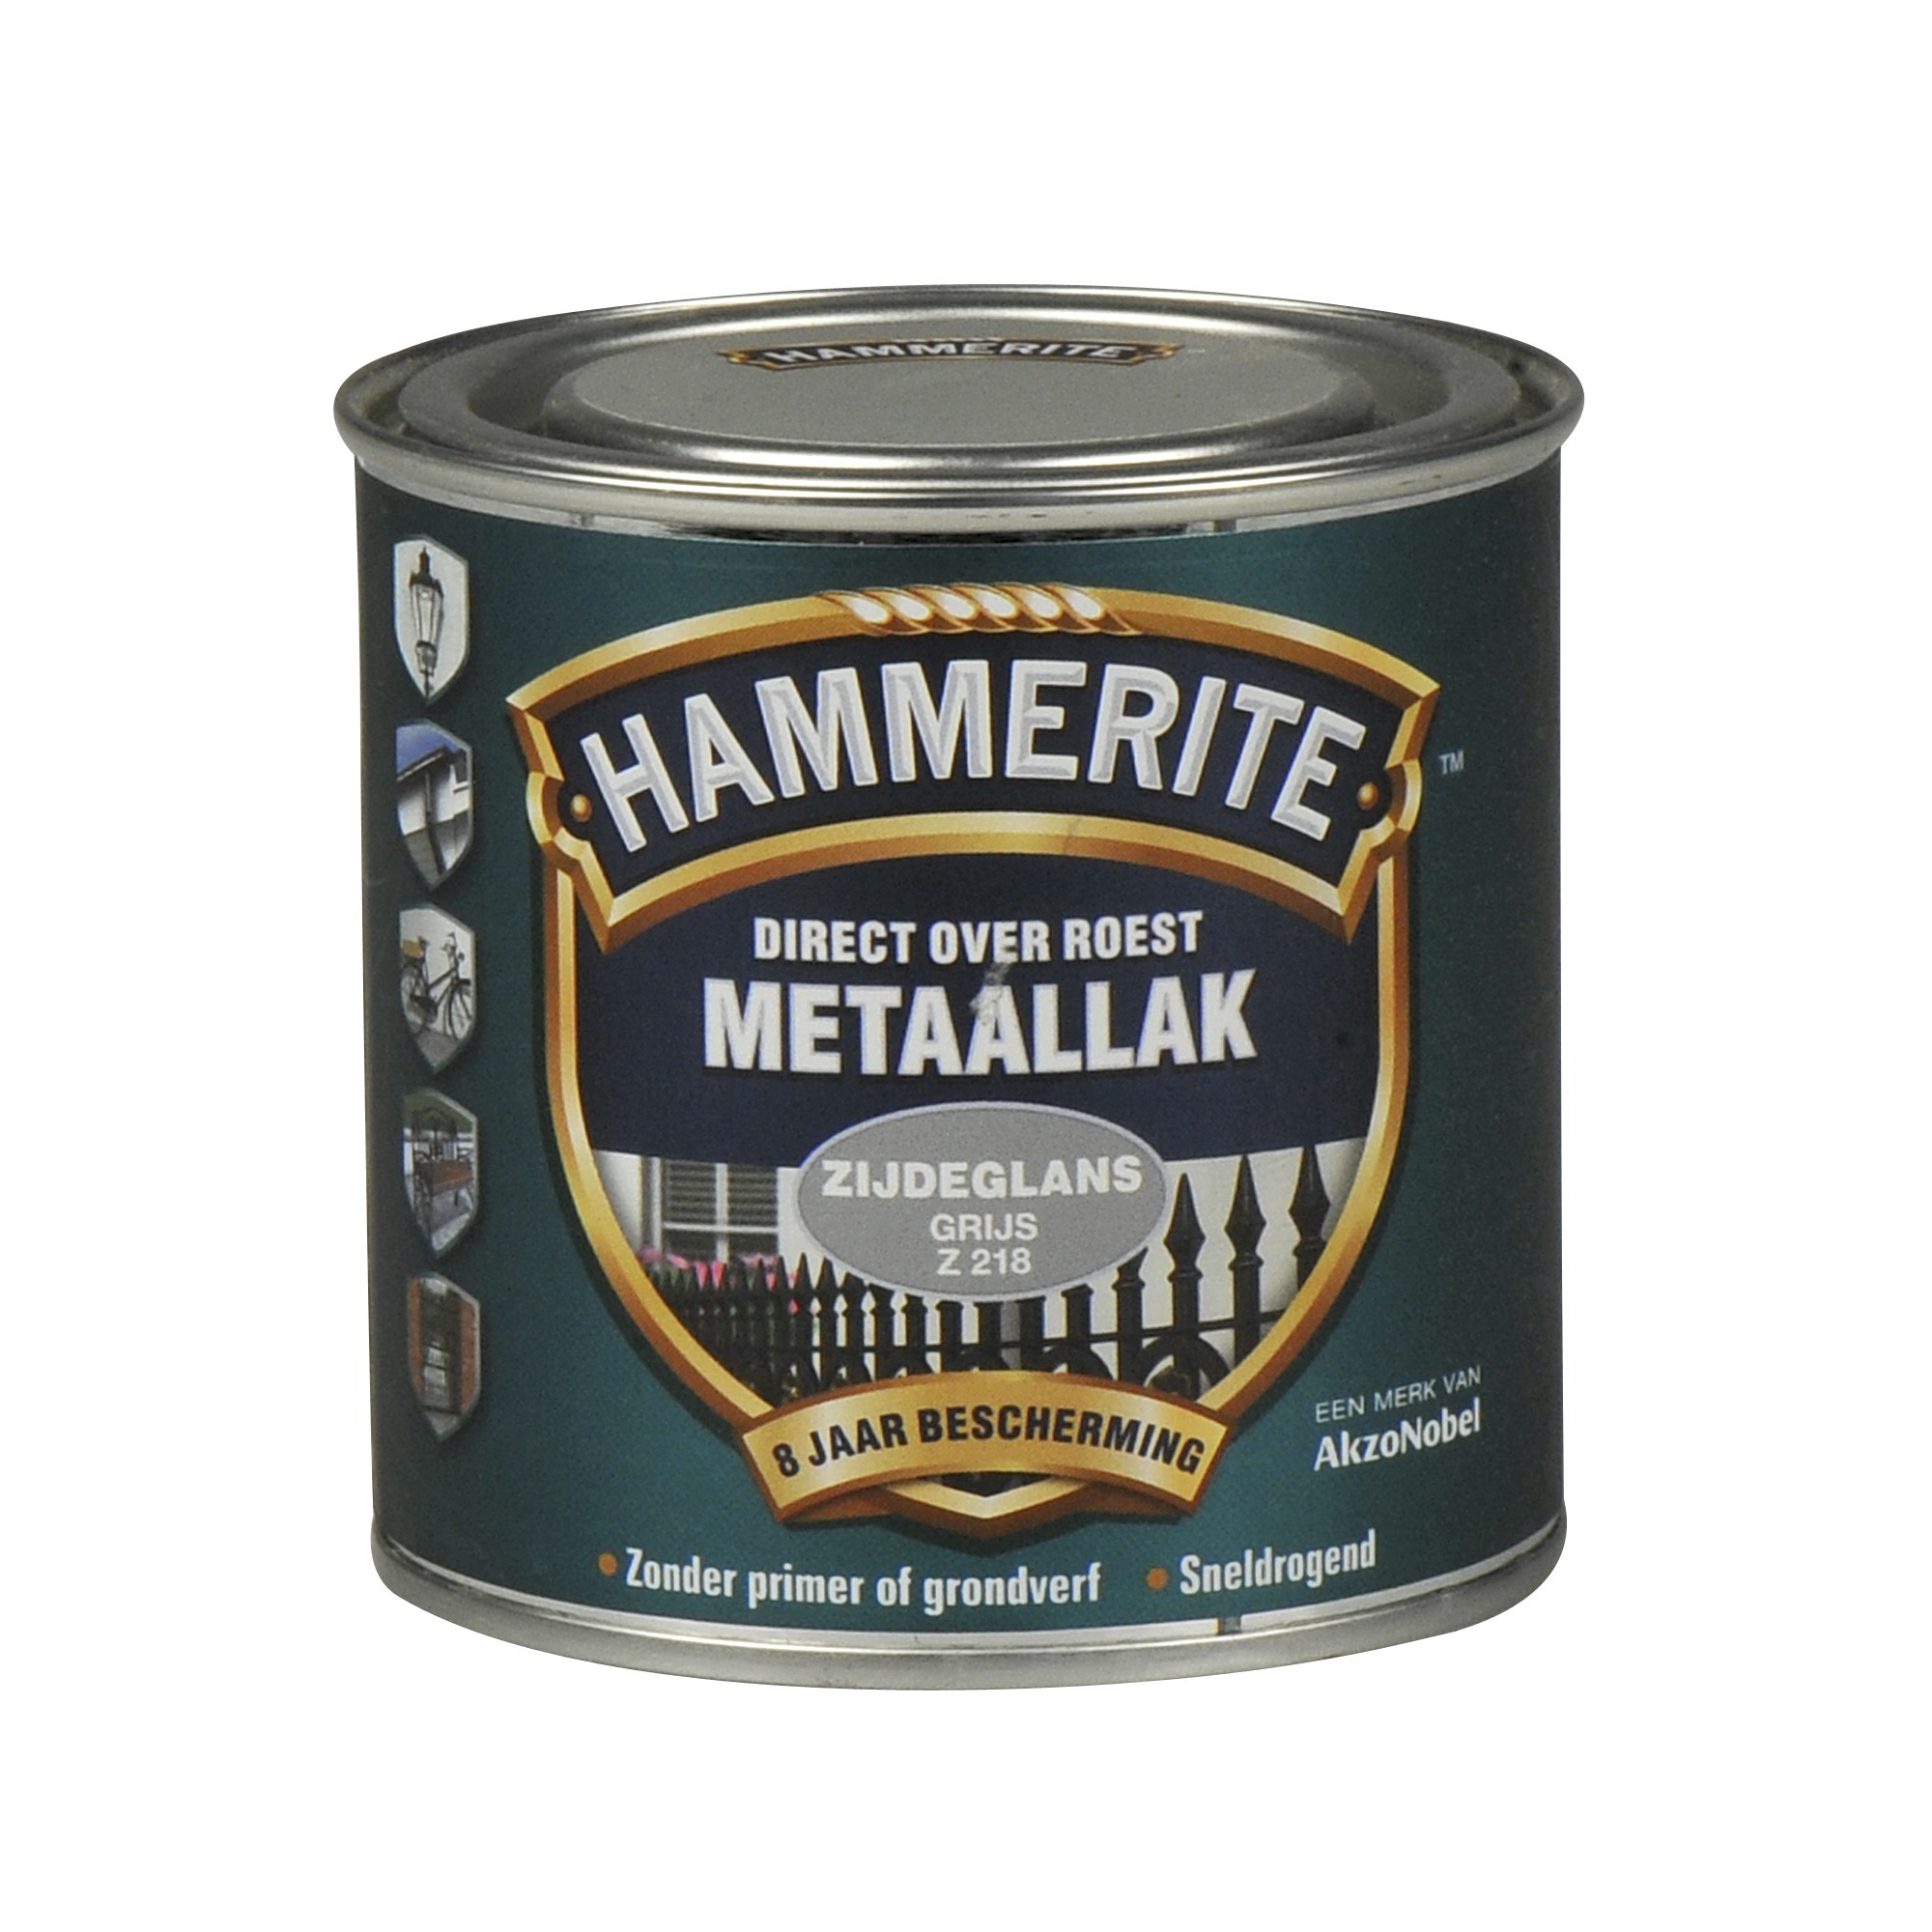 Hammerite direct over roest metaallak zijdeglans grijs - 250 ml